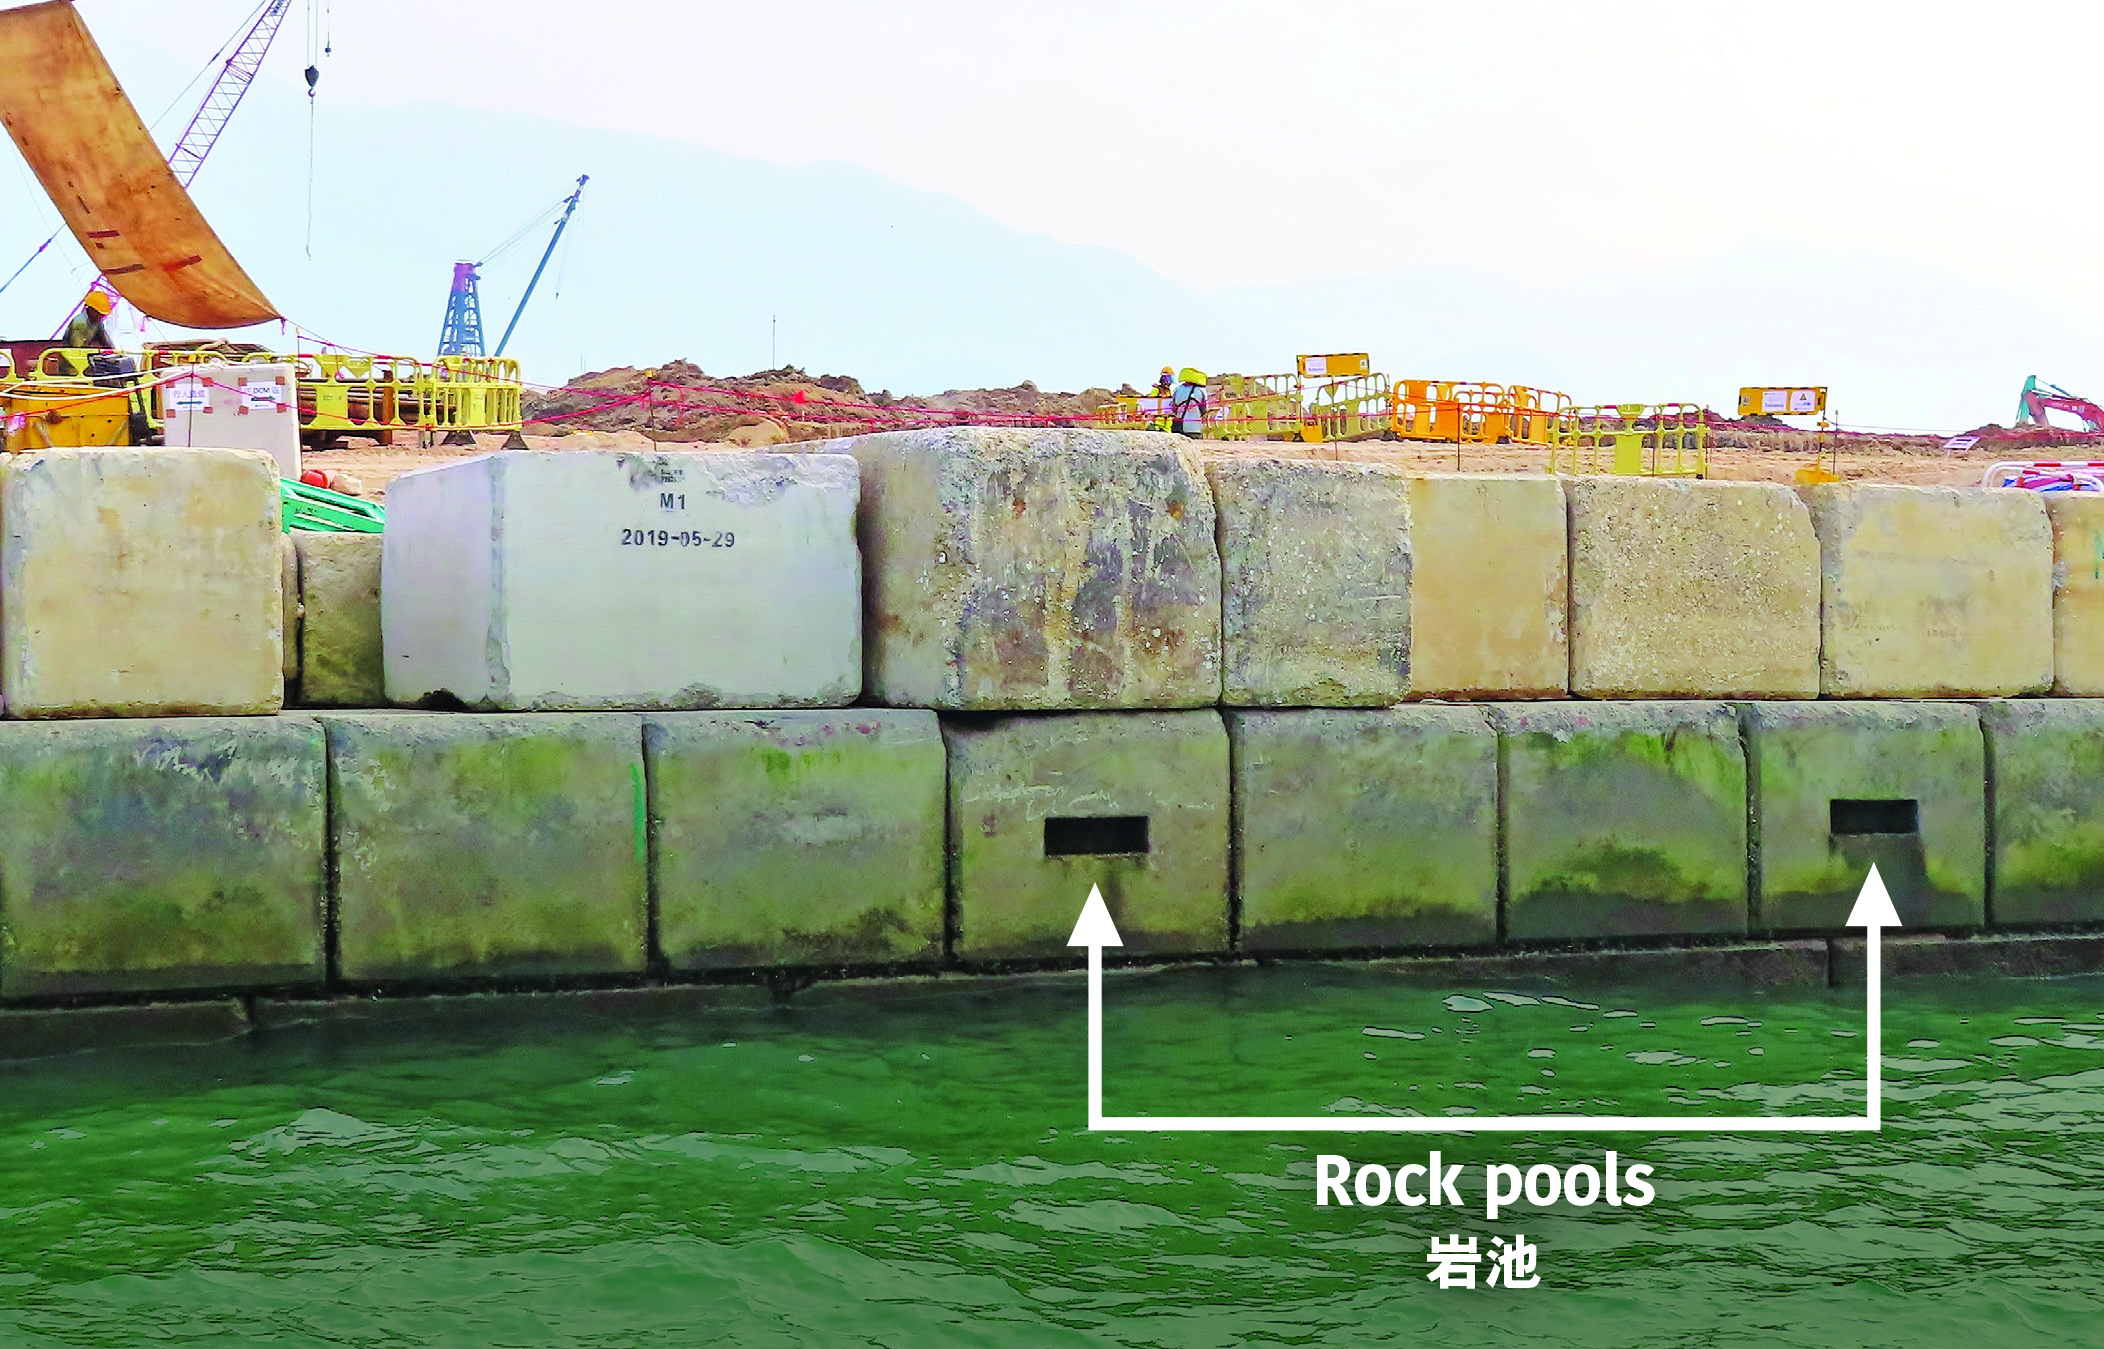 分散铺设于垂直海堤上的环保混凝土块，有助提升海洋生物 多样性（上）﹔岩池仿照布满岩石岸边的天然岩池，具有蓄水作用（下）。